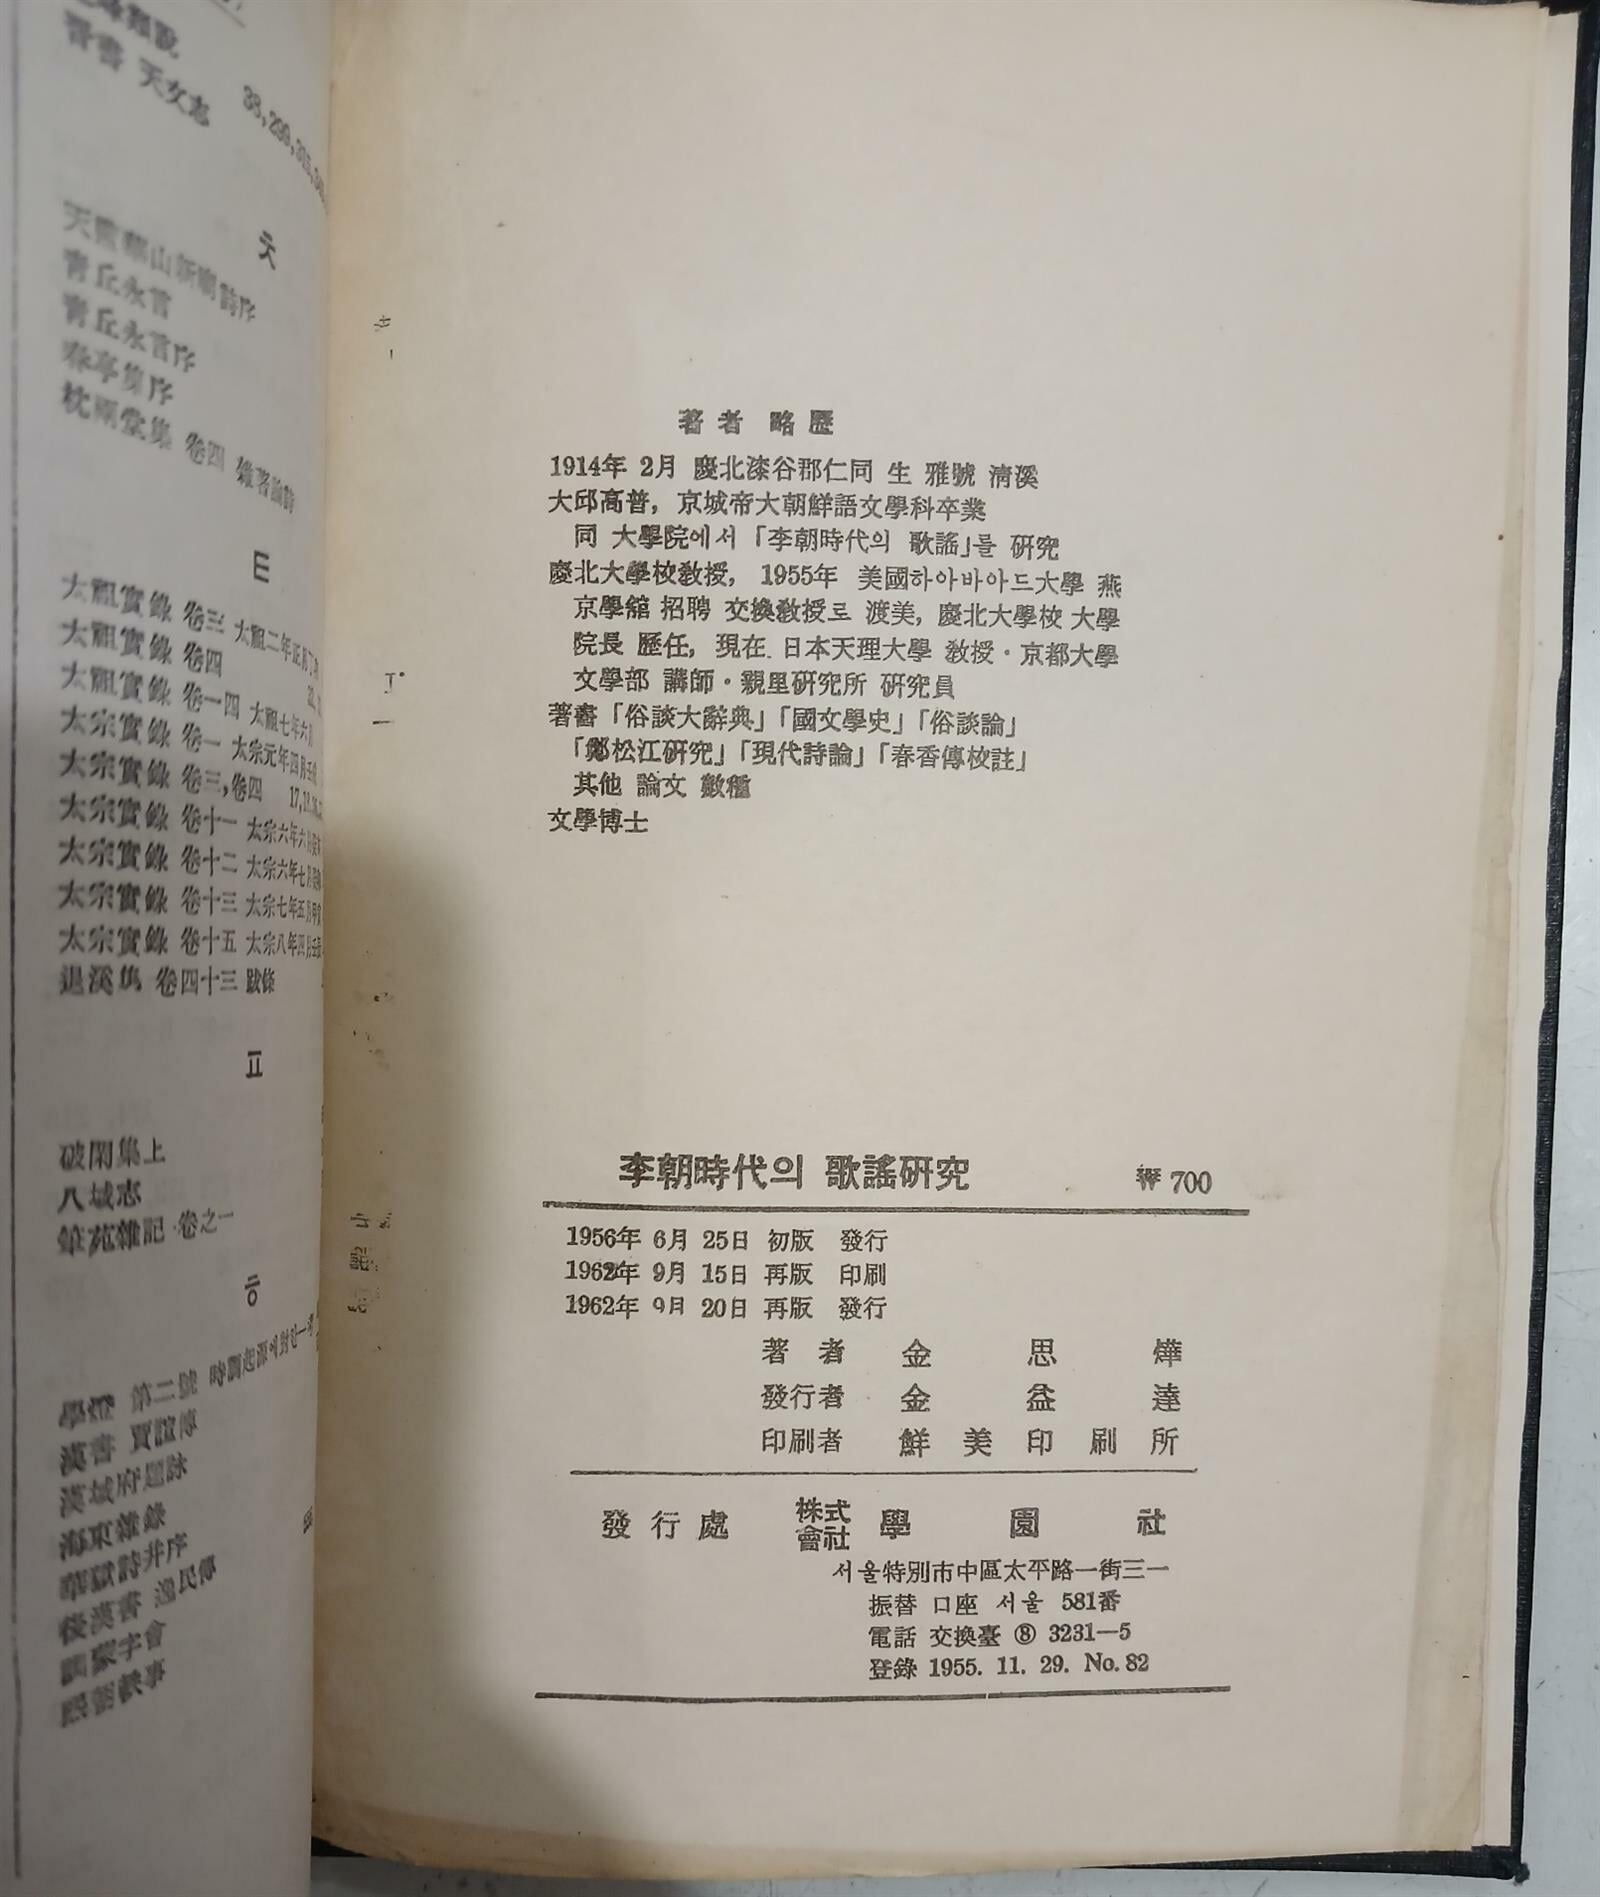 이조시대의 가요연구 | 김사엽 | 학원사| 1962년 9월